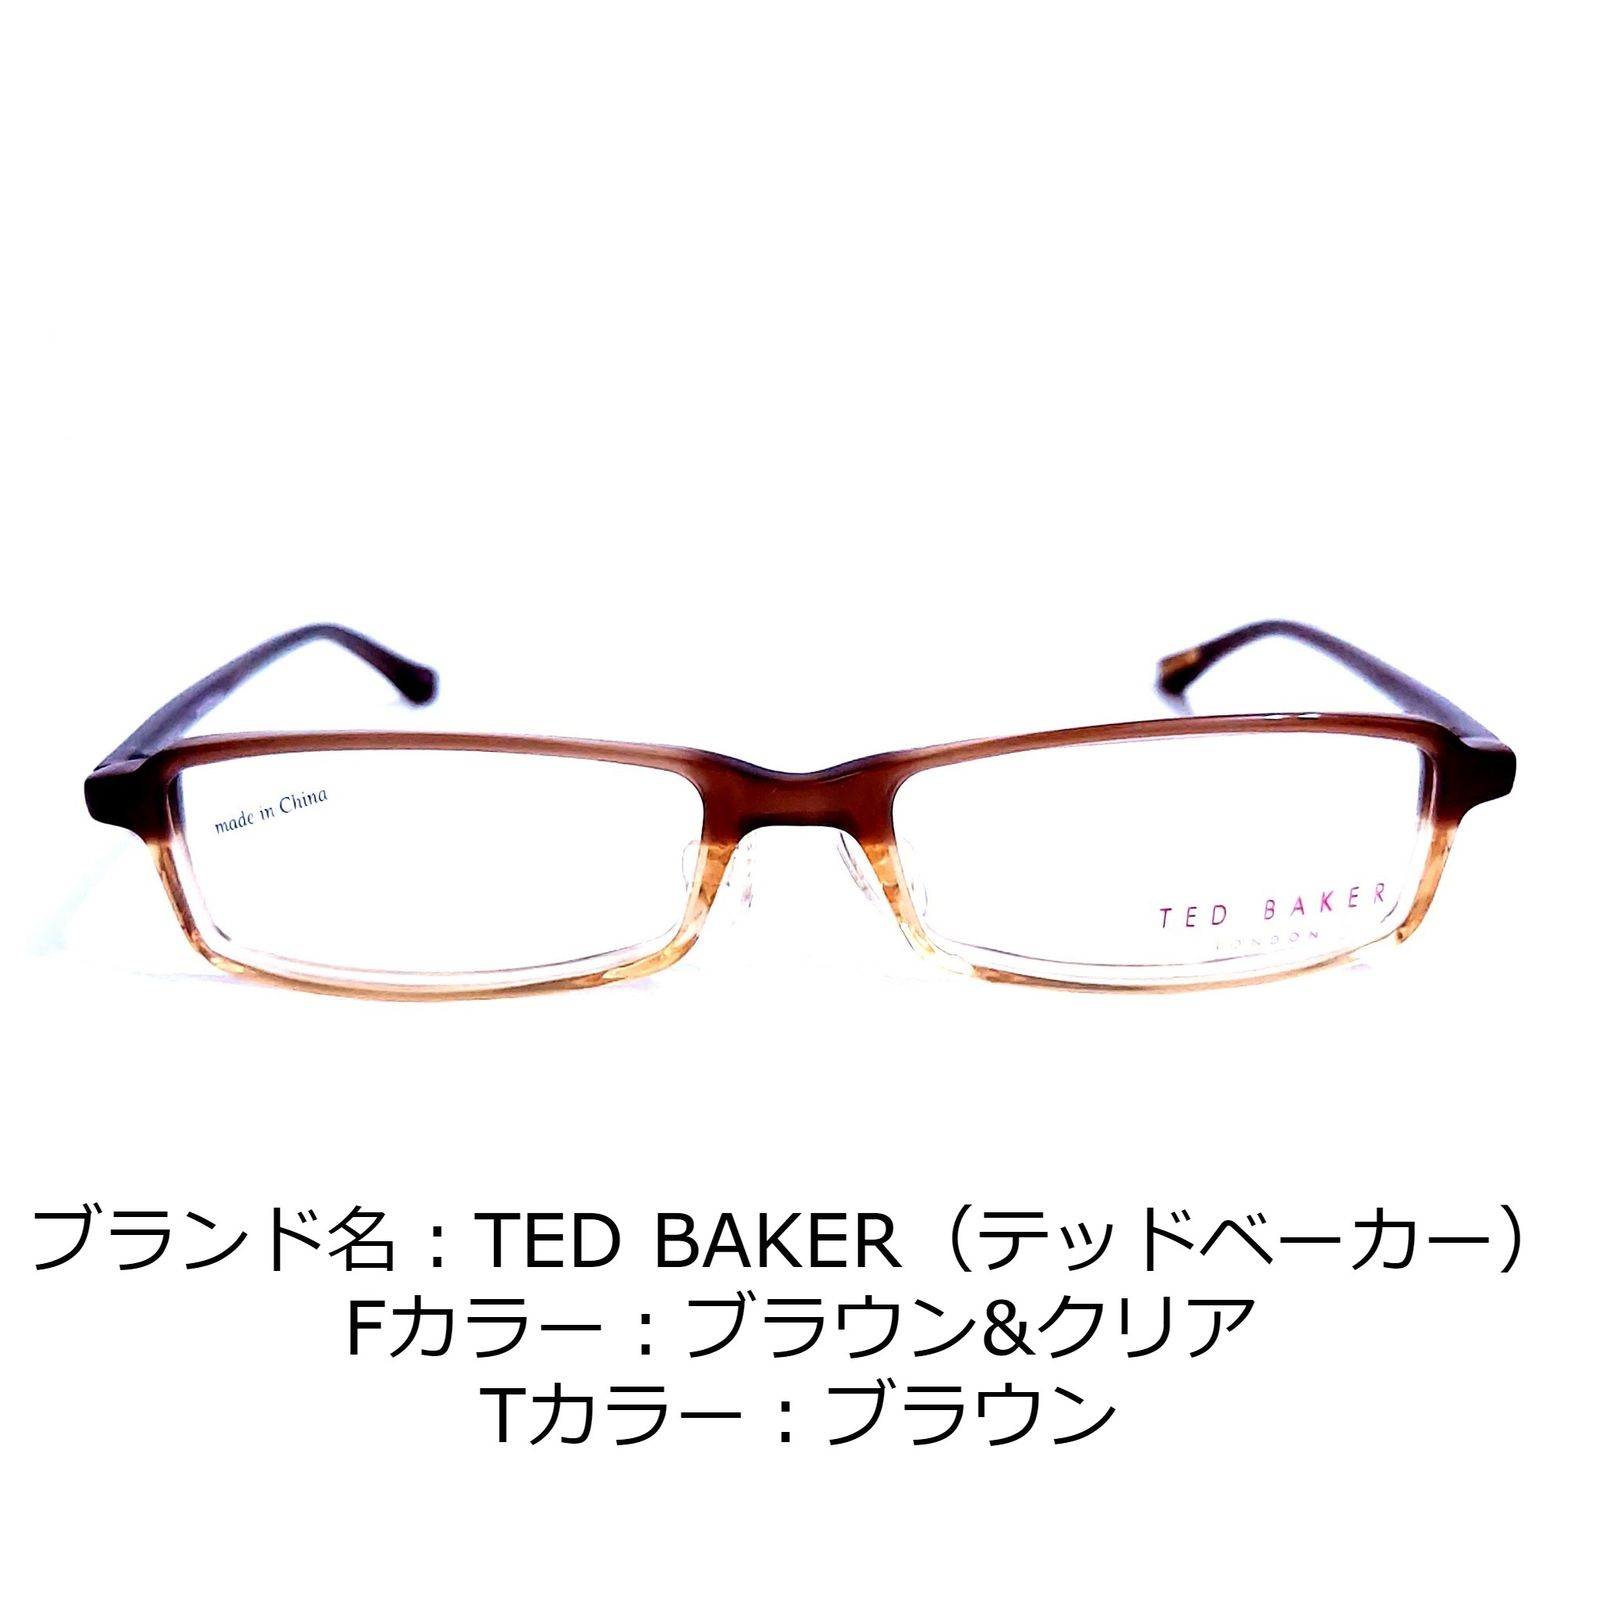 ダテメガネNo.1293+メガネ　TED BAKER【度数入り込み価格】